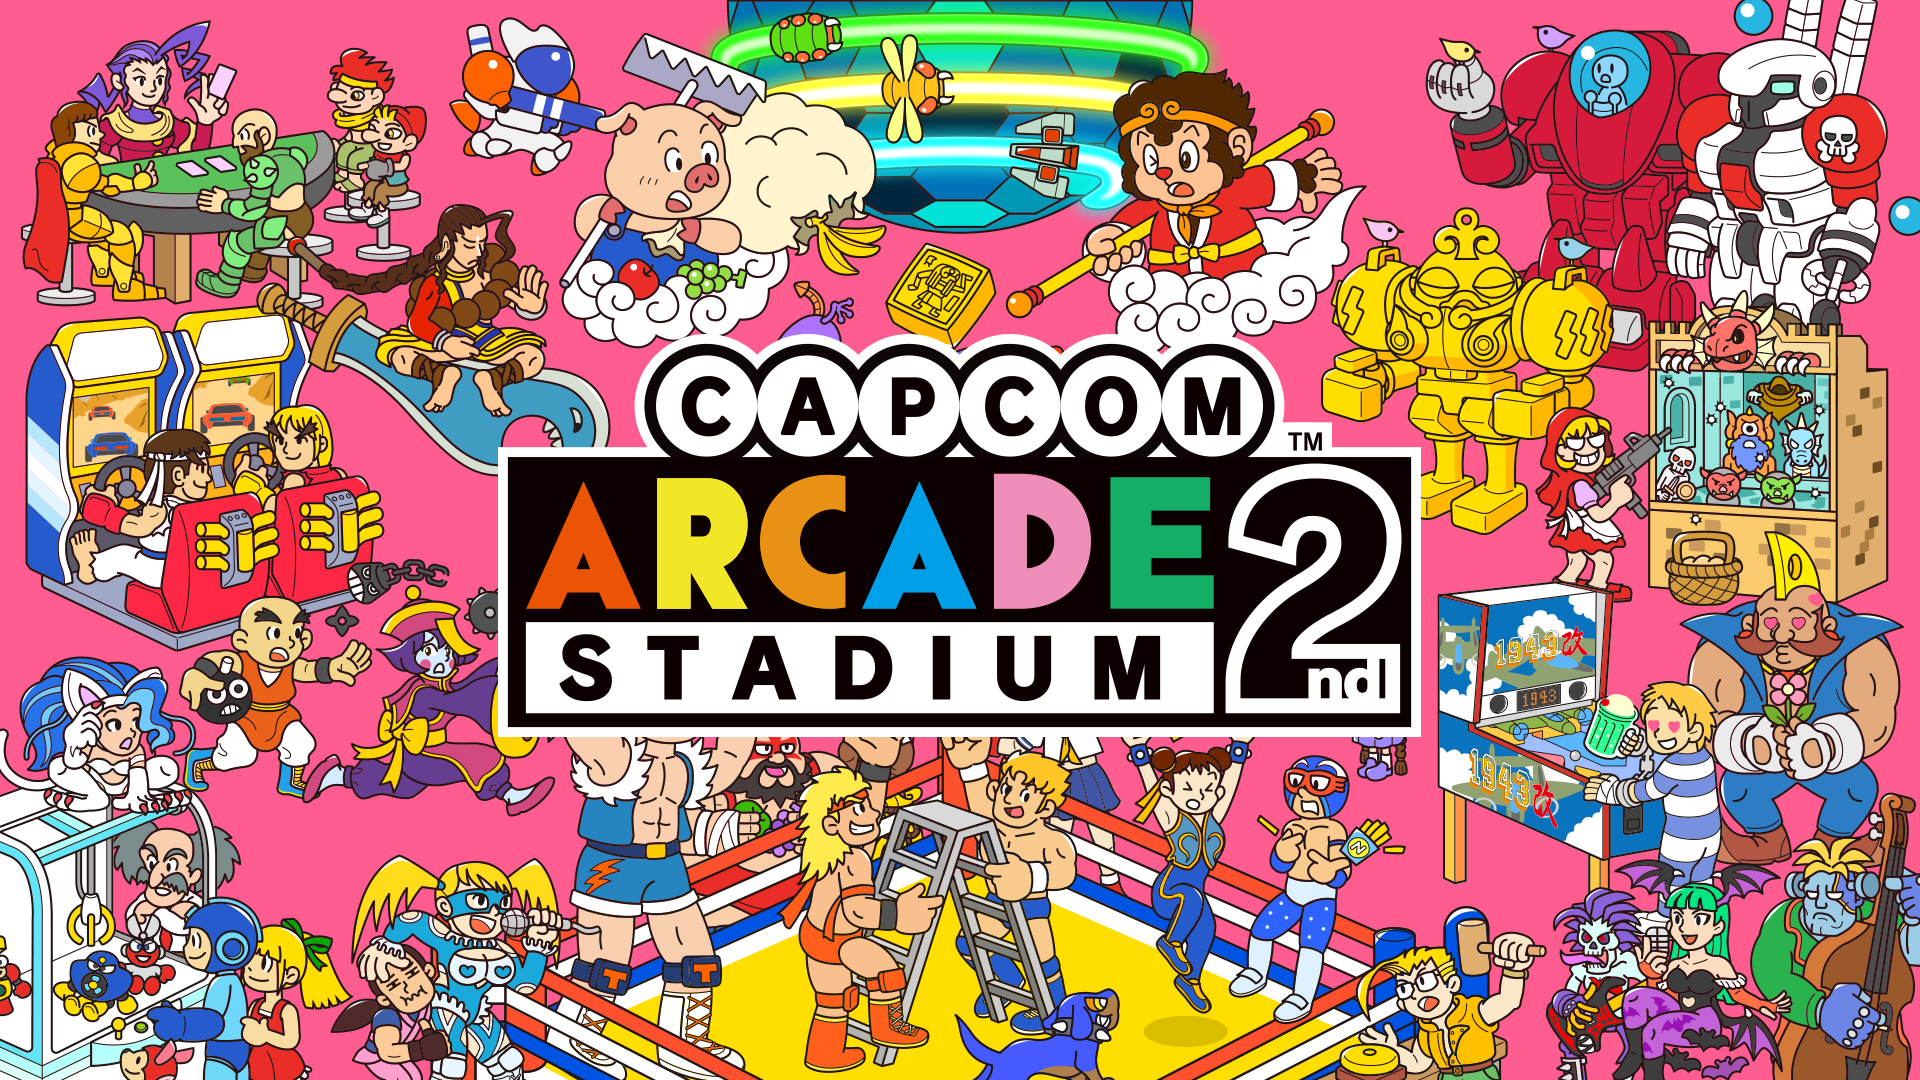 Capcom Arcade Stadium 2nd (7)